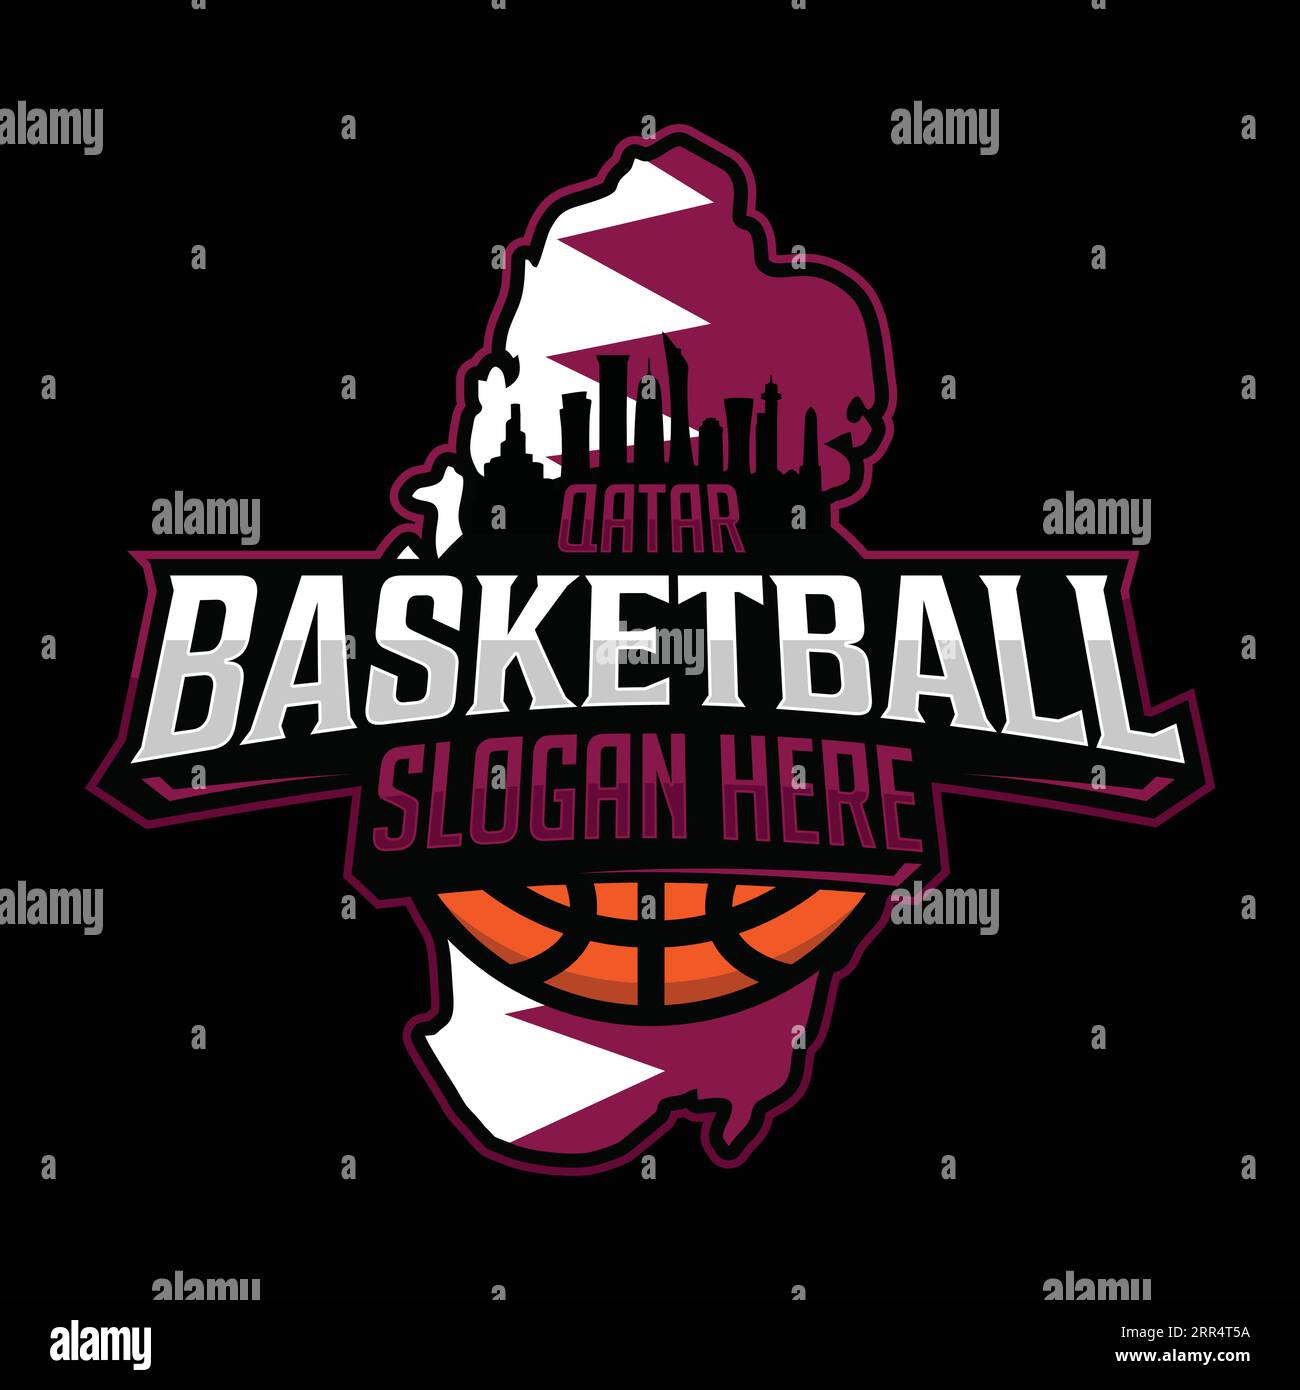 Logo de l'équipe Qatar Basketball emblème dans un style moderne avec fond noir. Illustration vectorielle Illustration de Vecteur